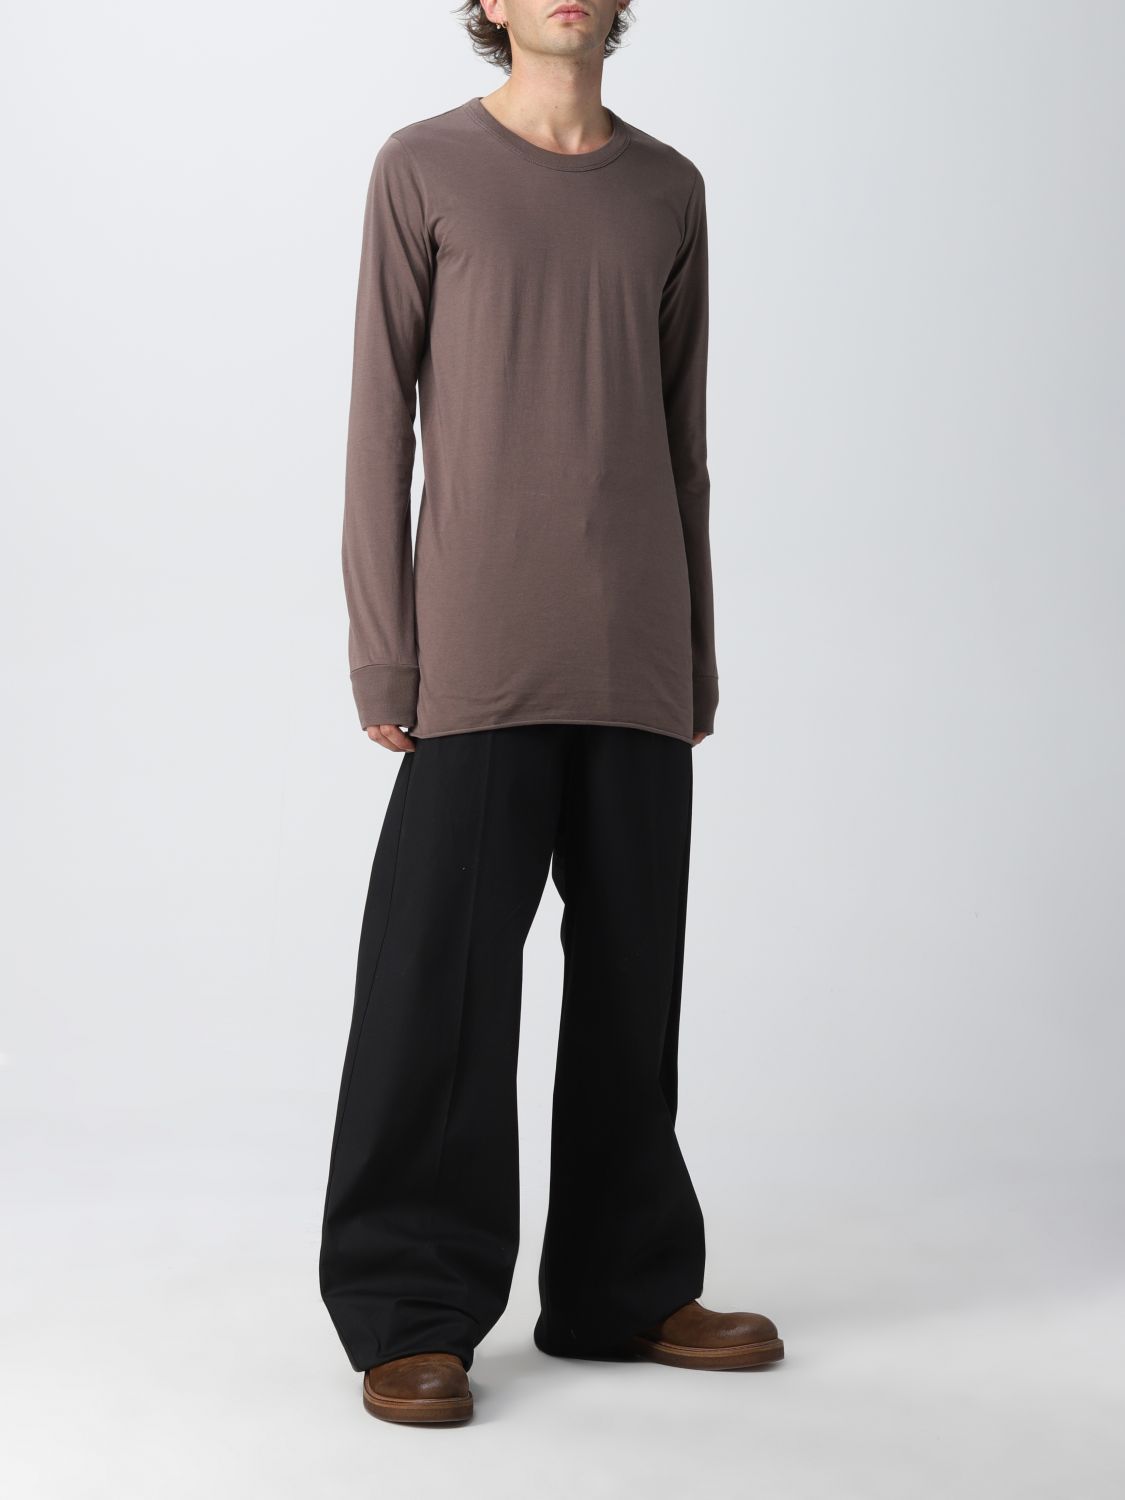 Tシャツ Rick Owens: Tシャツ メンズ Rick Owens ダスト 2